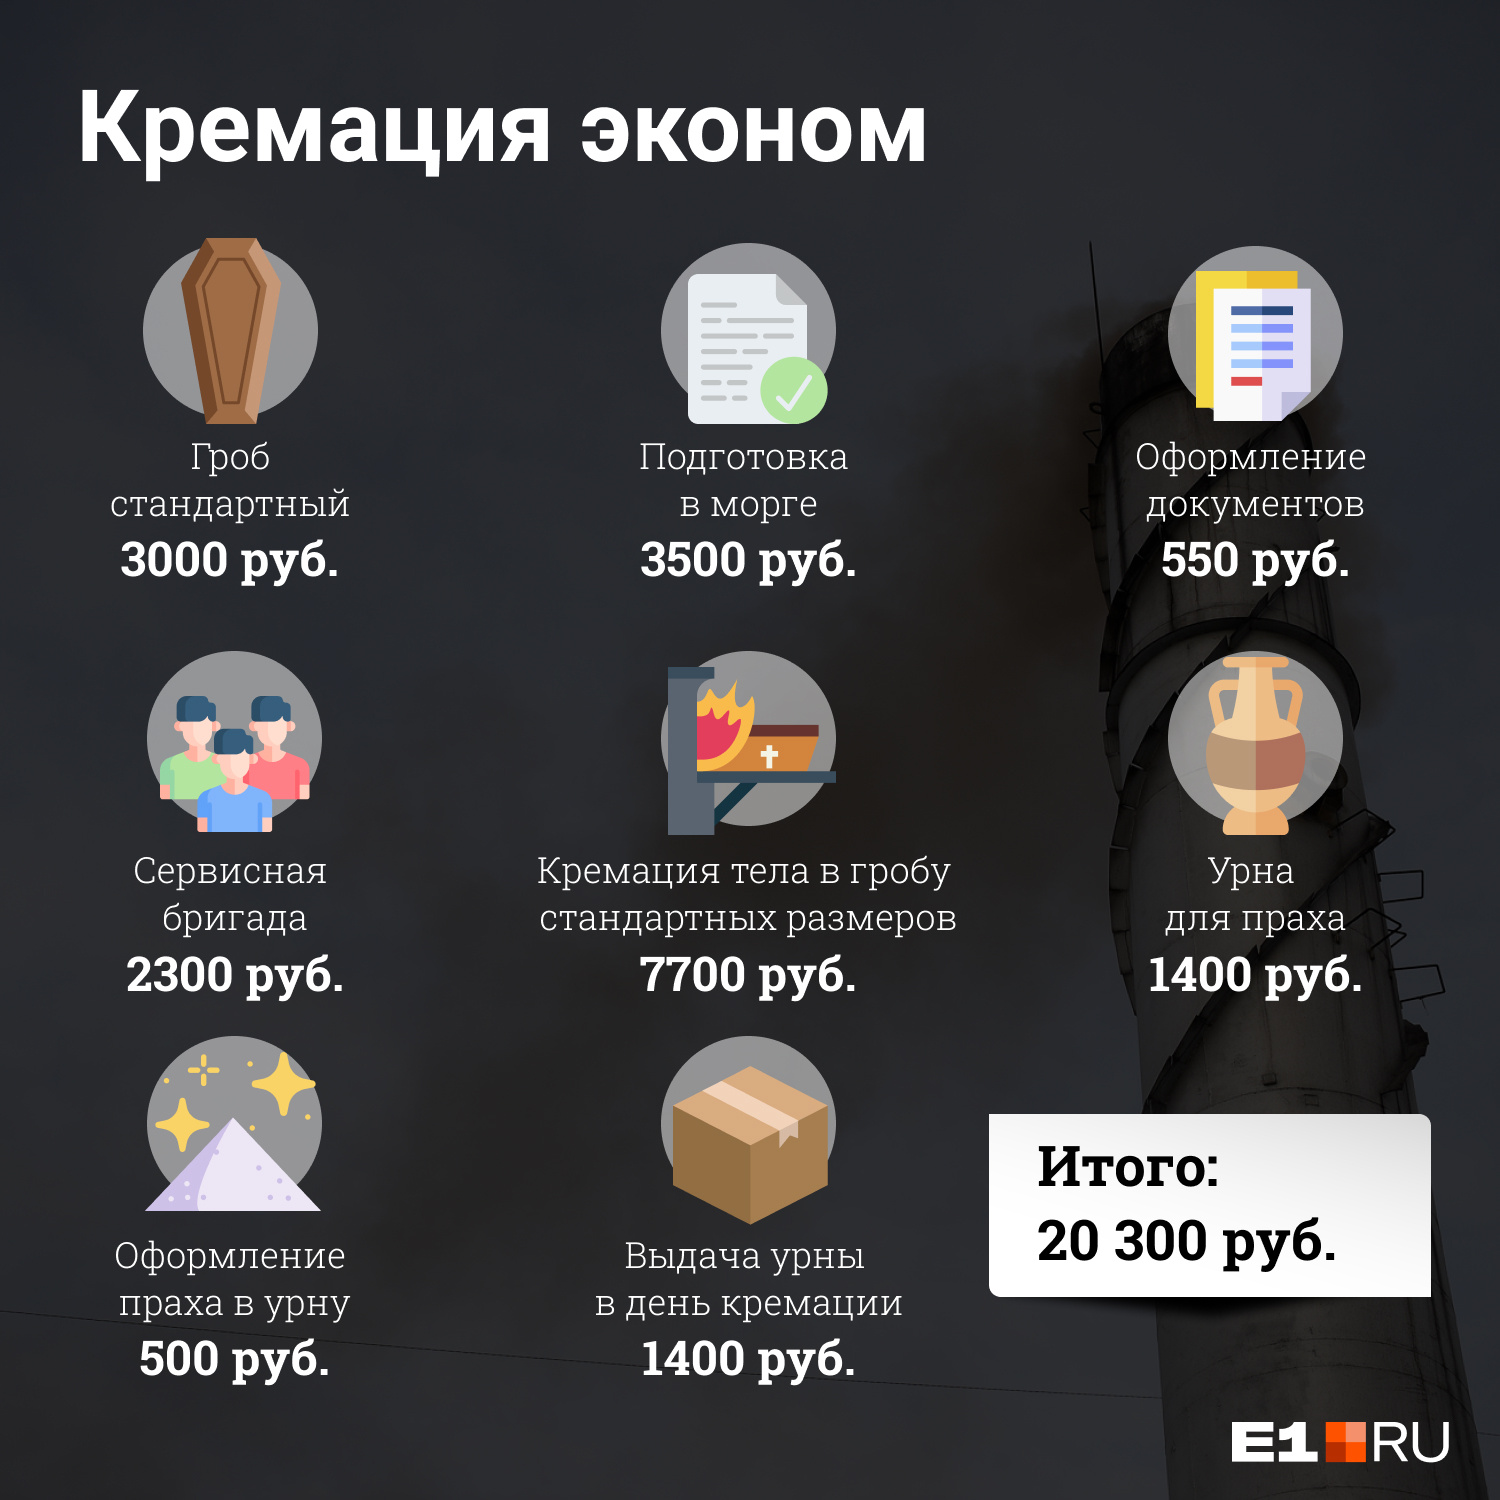 Кремация обойдется чуть дороже — около 20 тысяч рублей